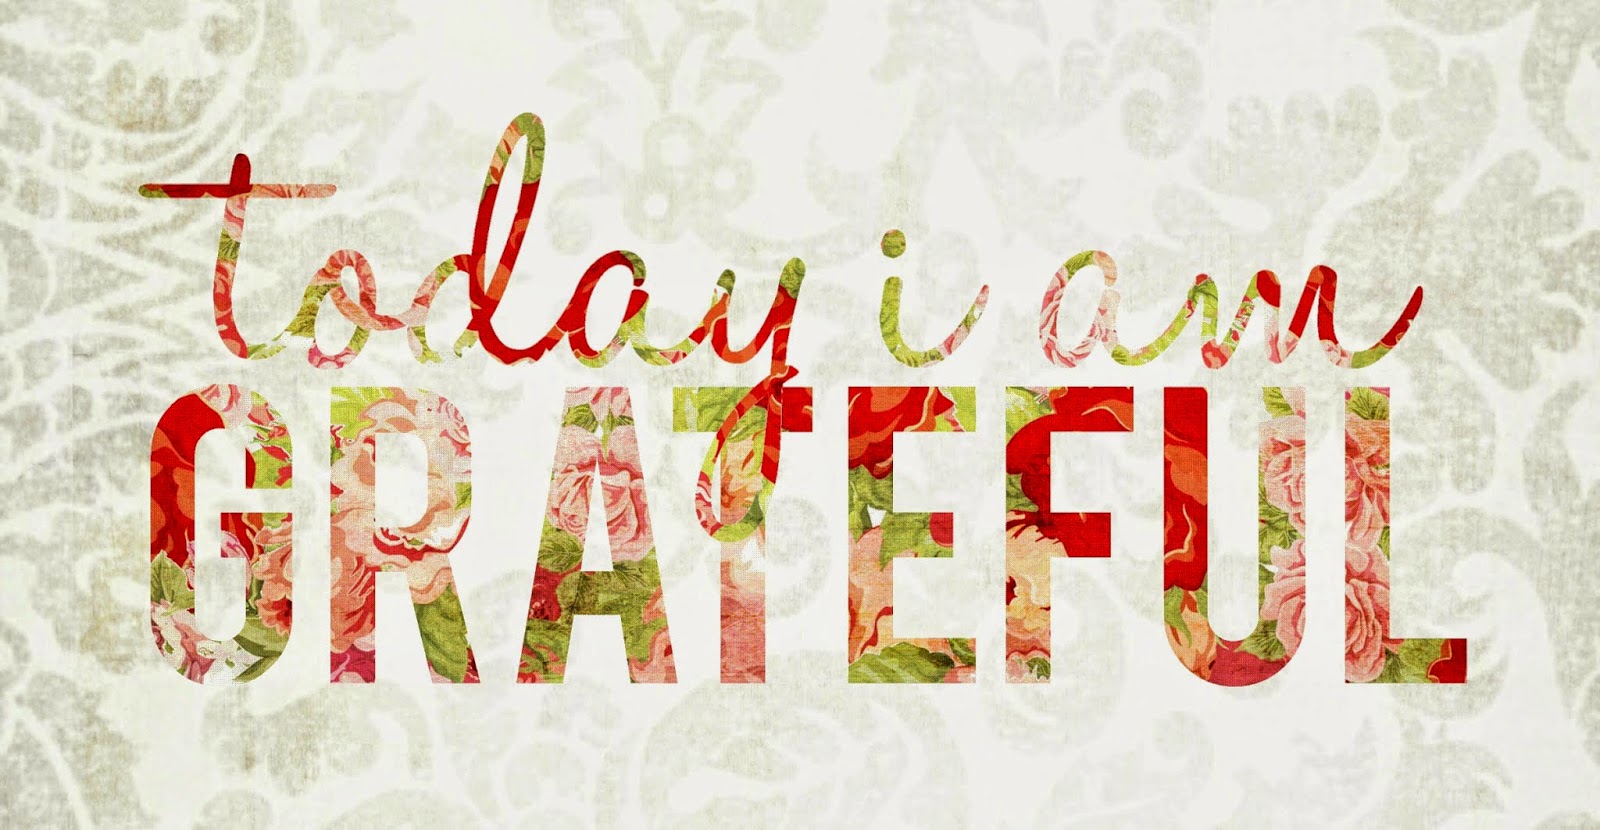 Today I am Grateful